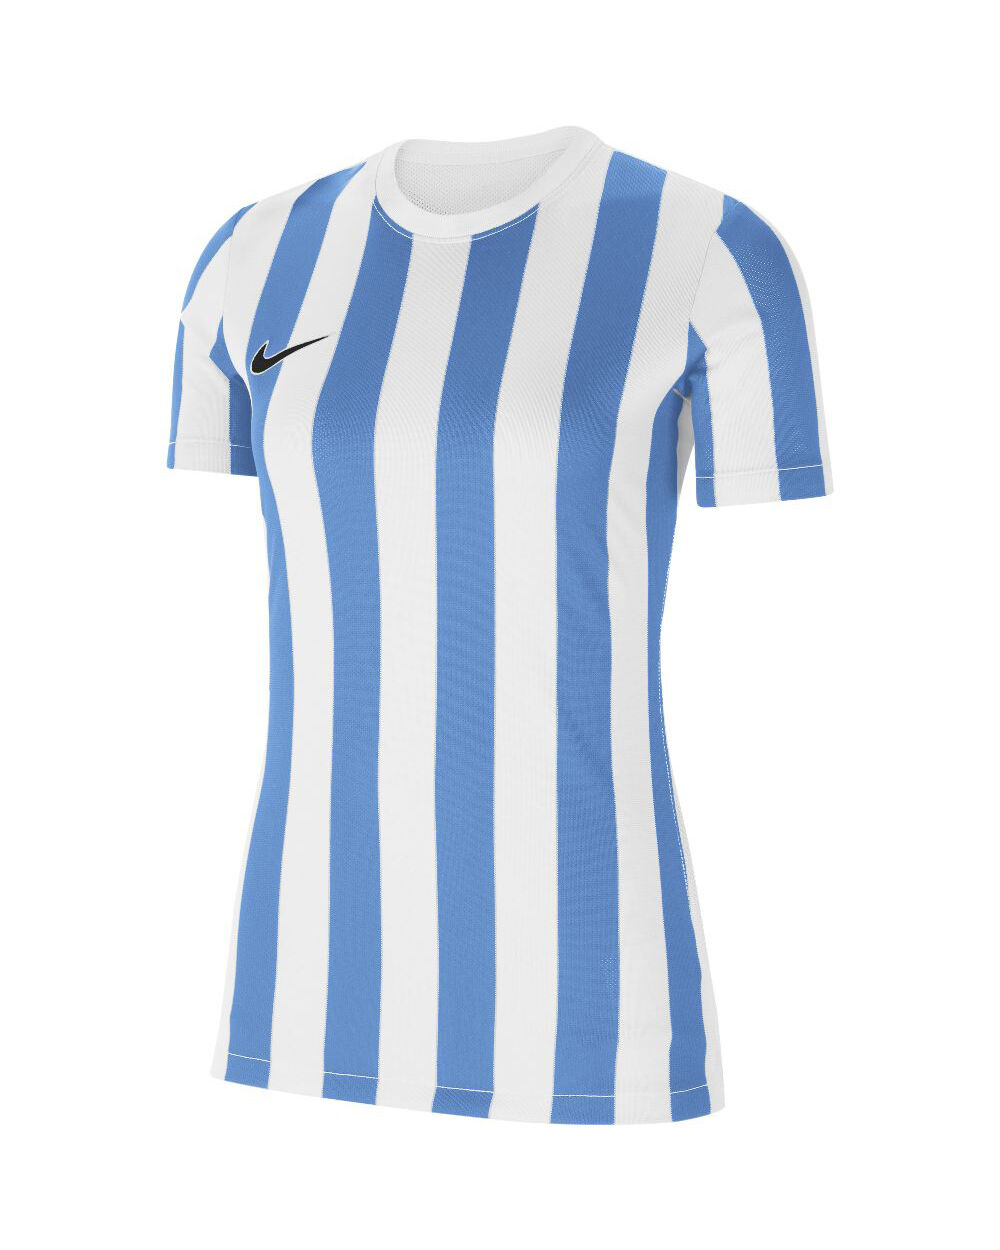 Nike Maglia Striped Division IV Bianco e Blu Bianco per Donne CW3816-103 XS